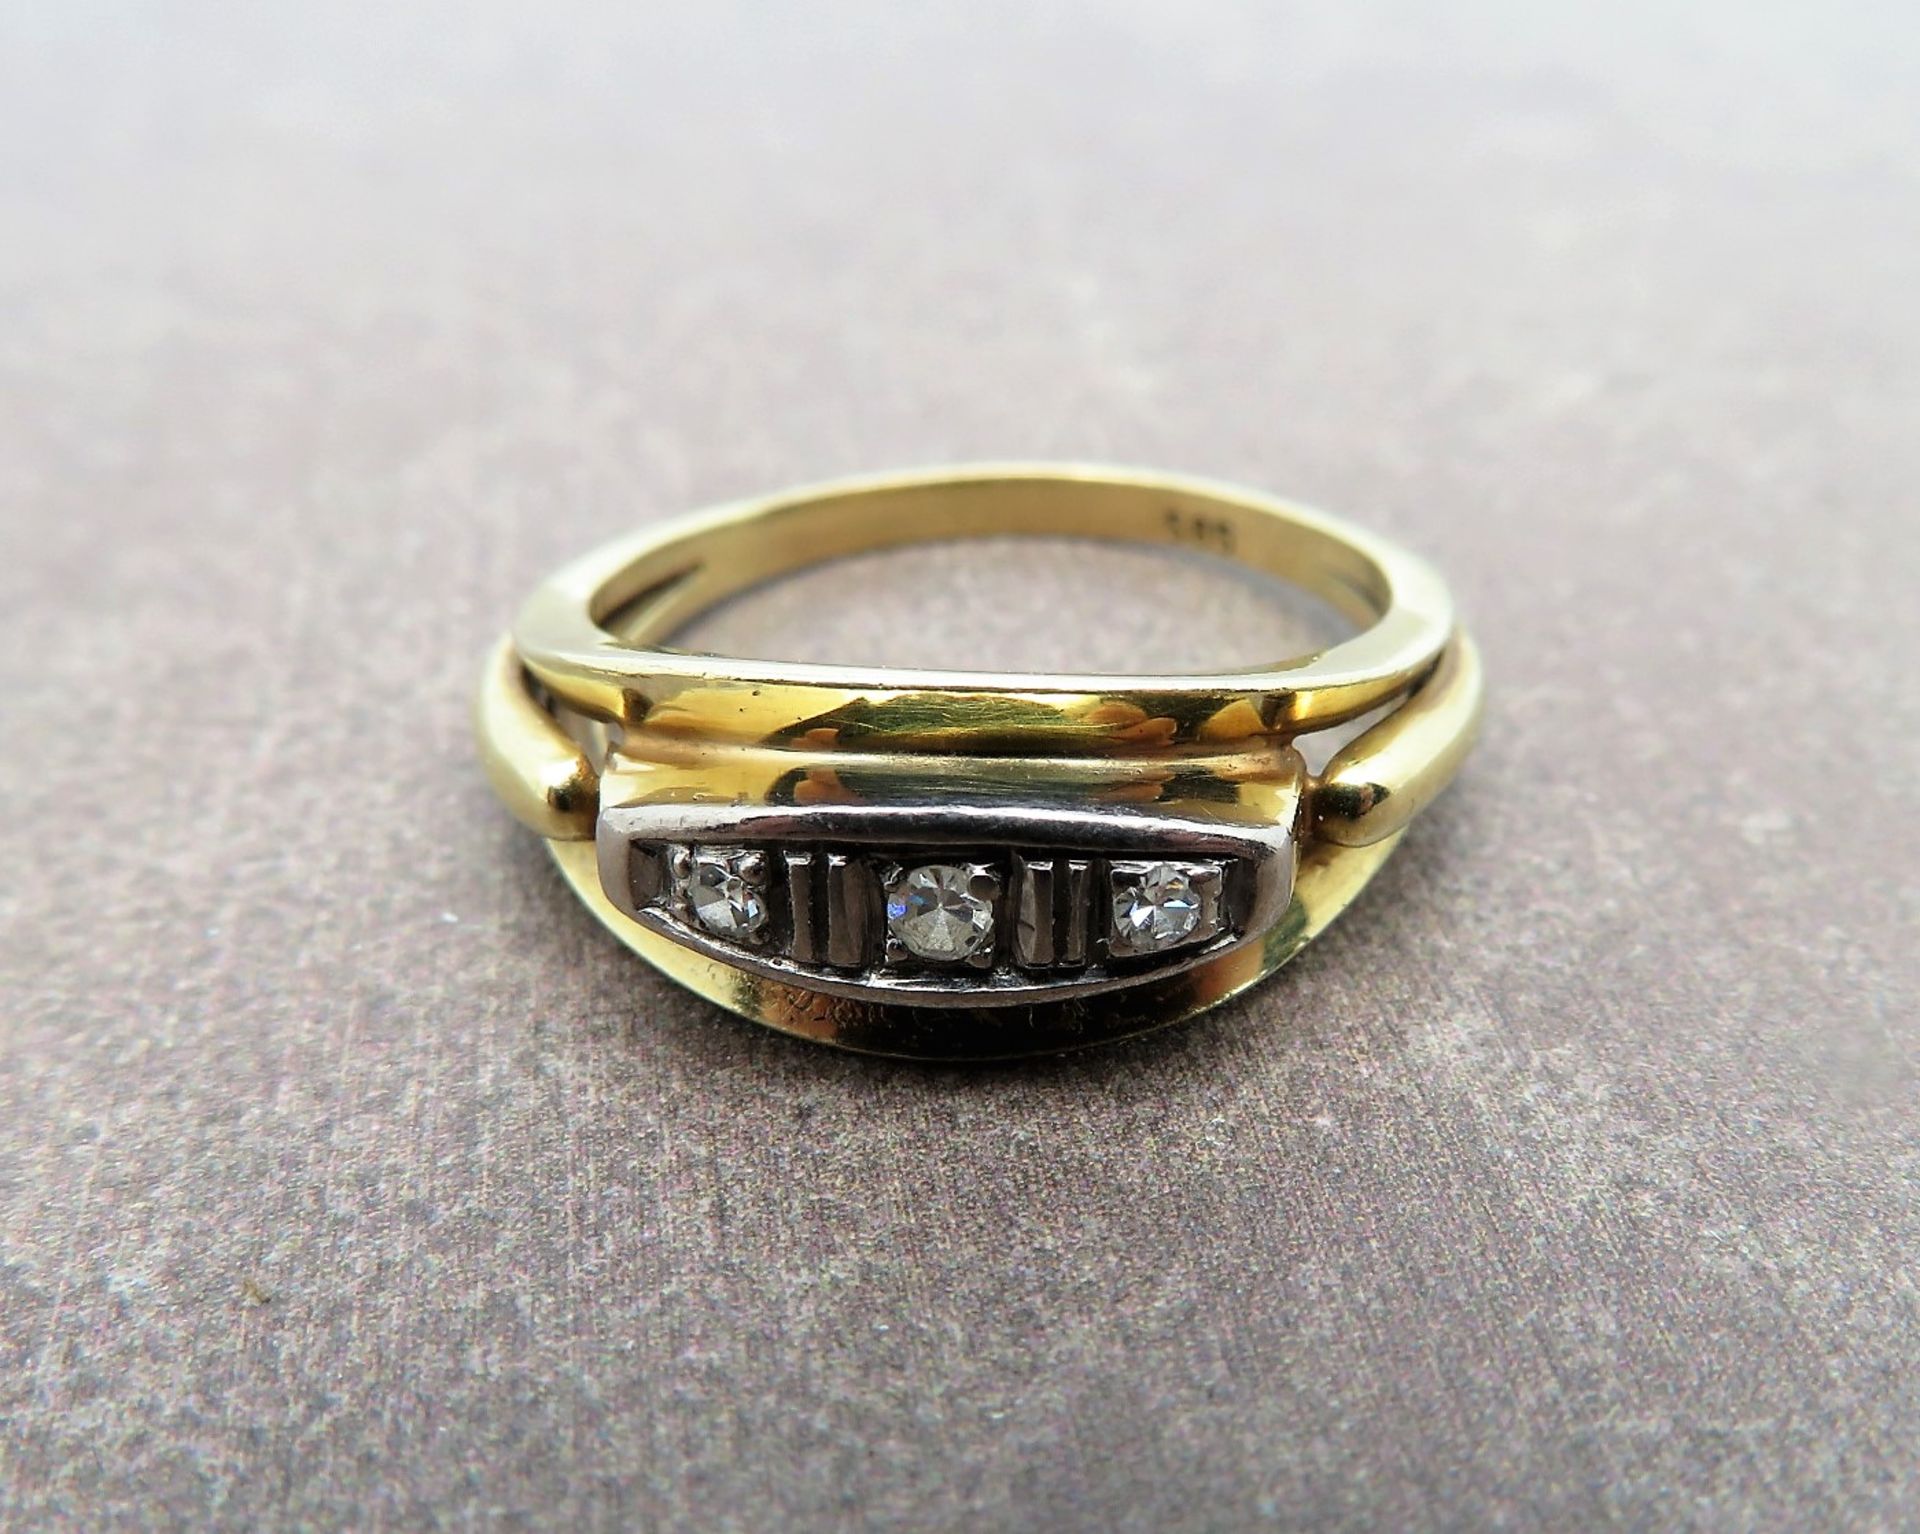 Damenring mit 3 Diamanten, 1930/40er Jahre, zus.ca. 0,10 ct, Gelbgold 585/000, gepunzt, 4,4 g, Ring